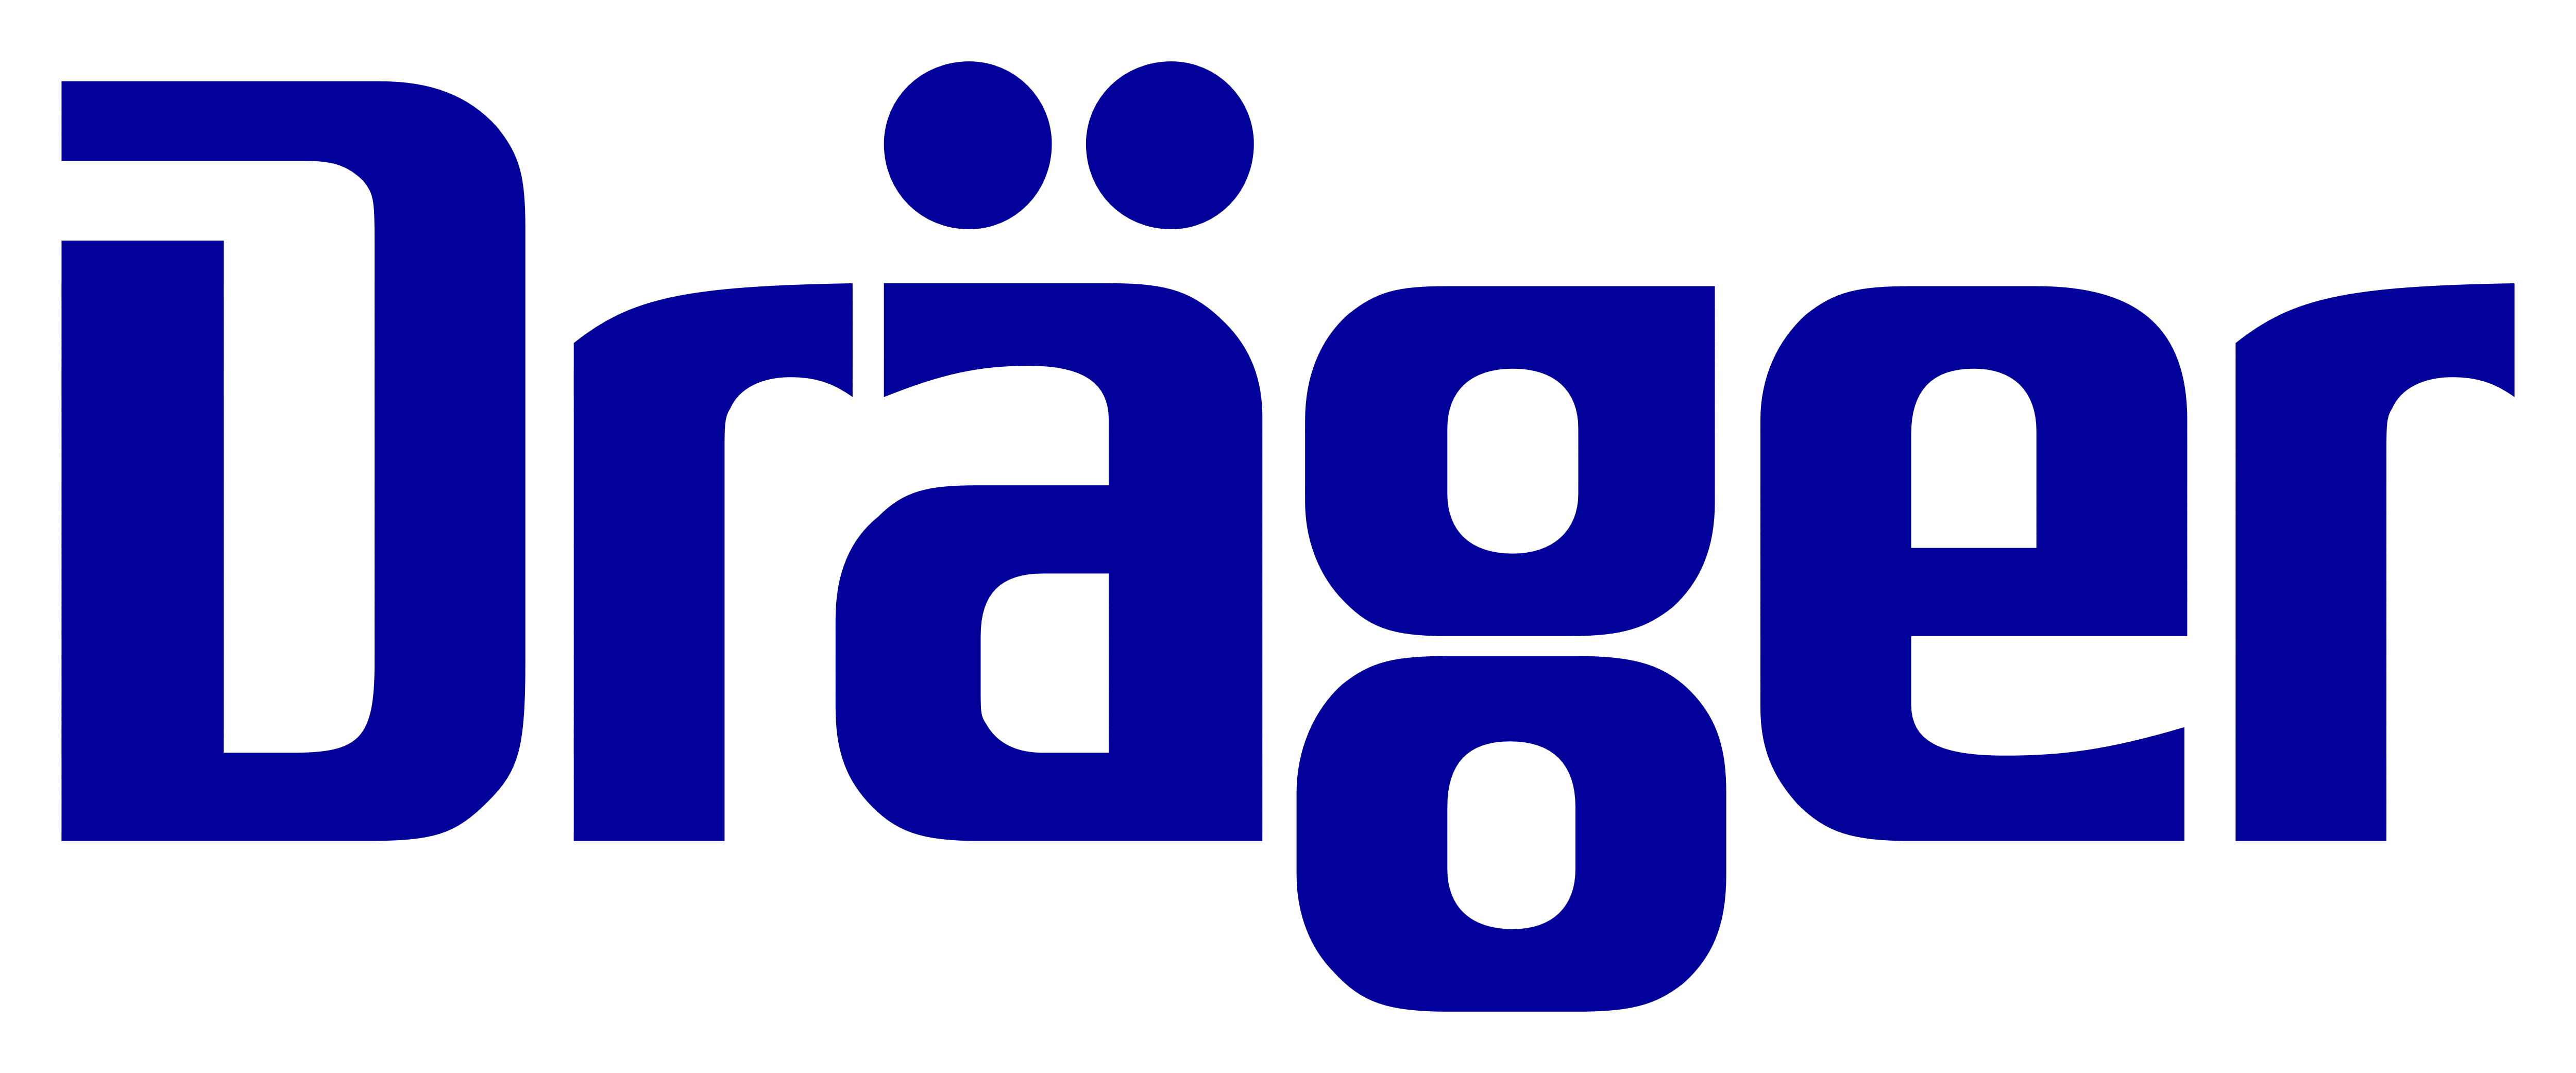 Drager Logo - Drager – Logos Download